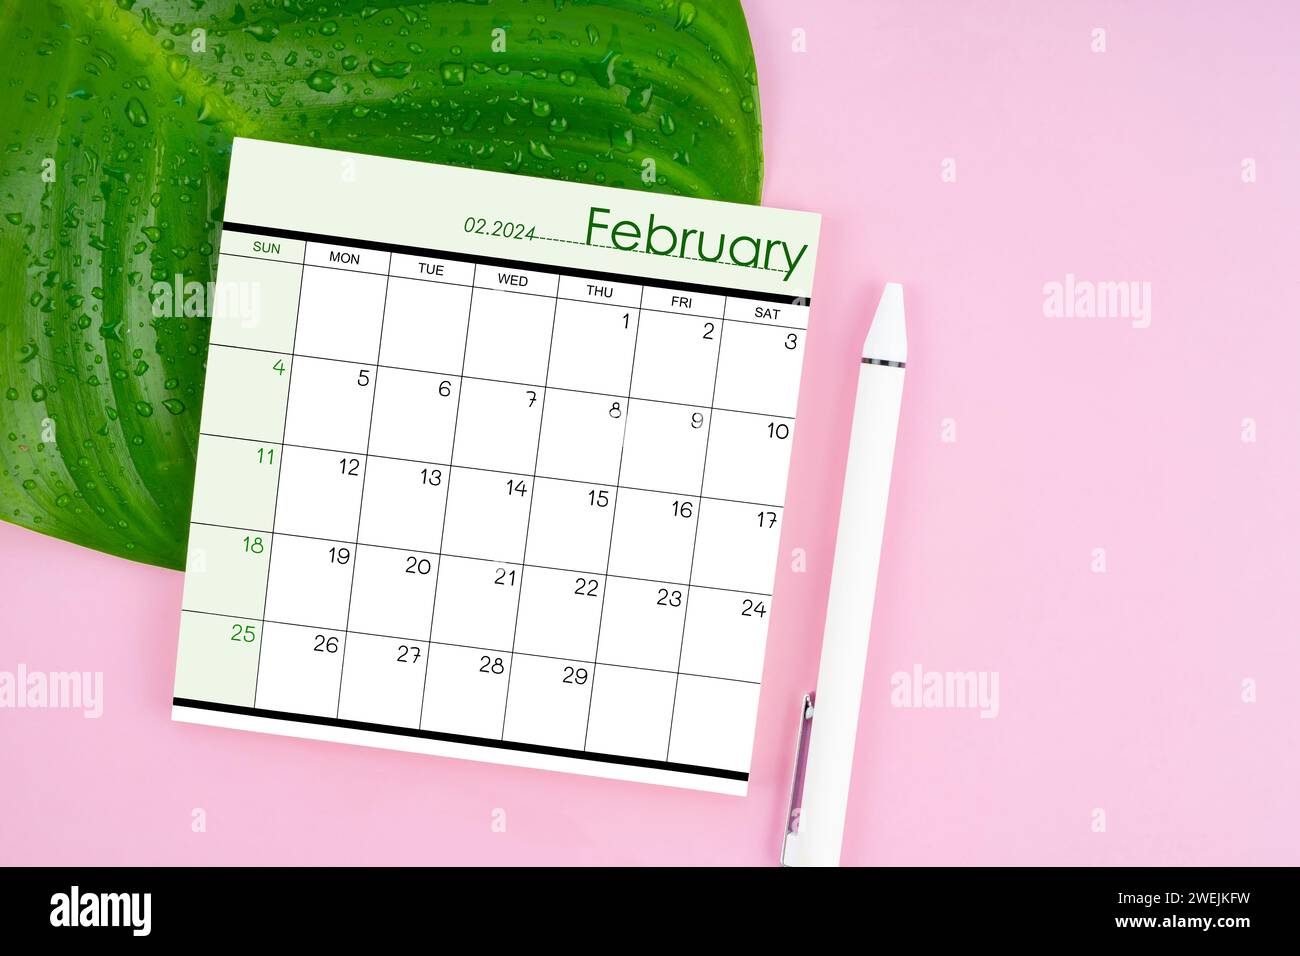 Pagina del calendario di febbraio 2024 e foglia verde fresca con gocce d'acqua su sfondo rosa. Foto Stock